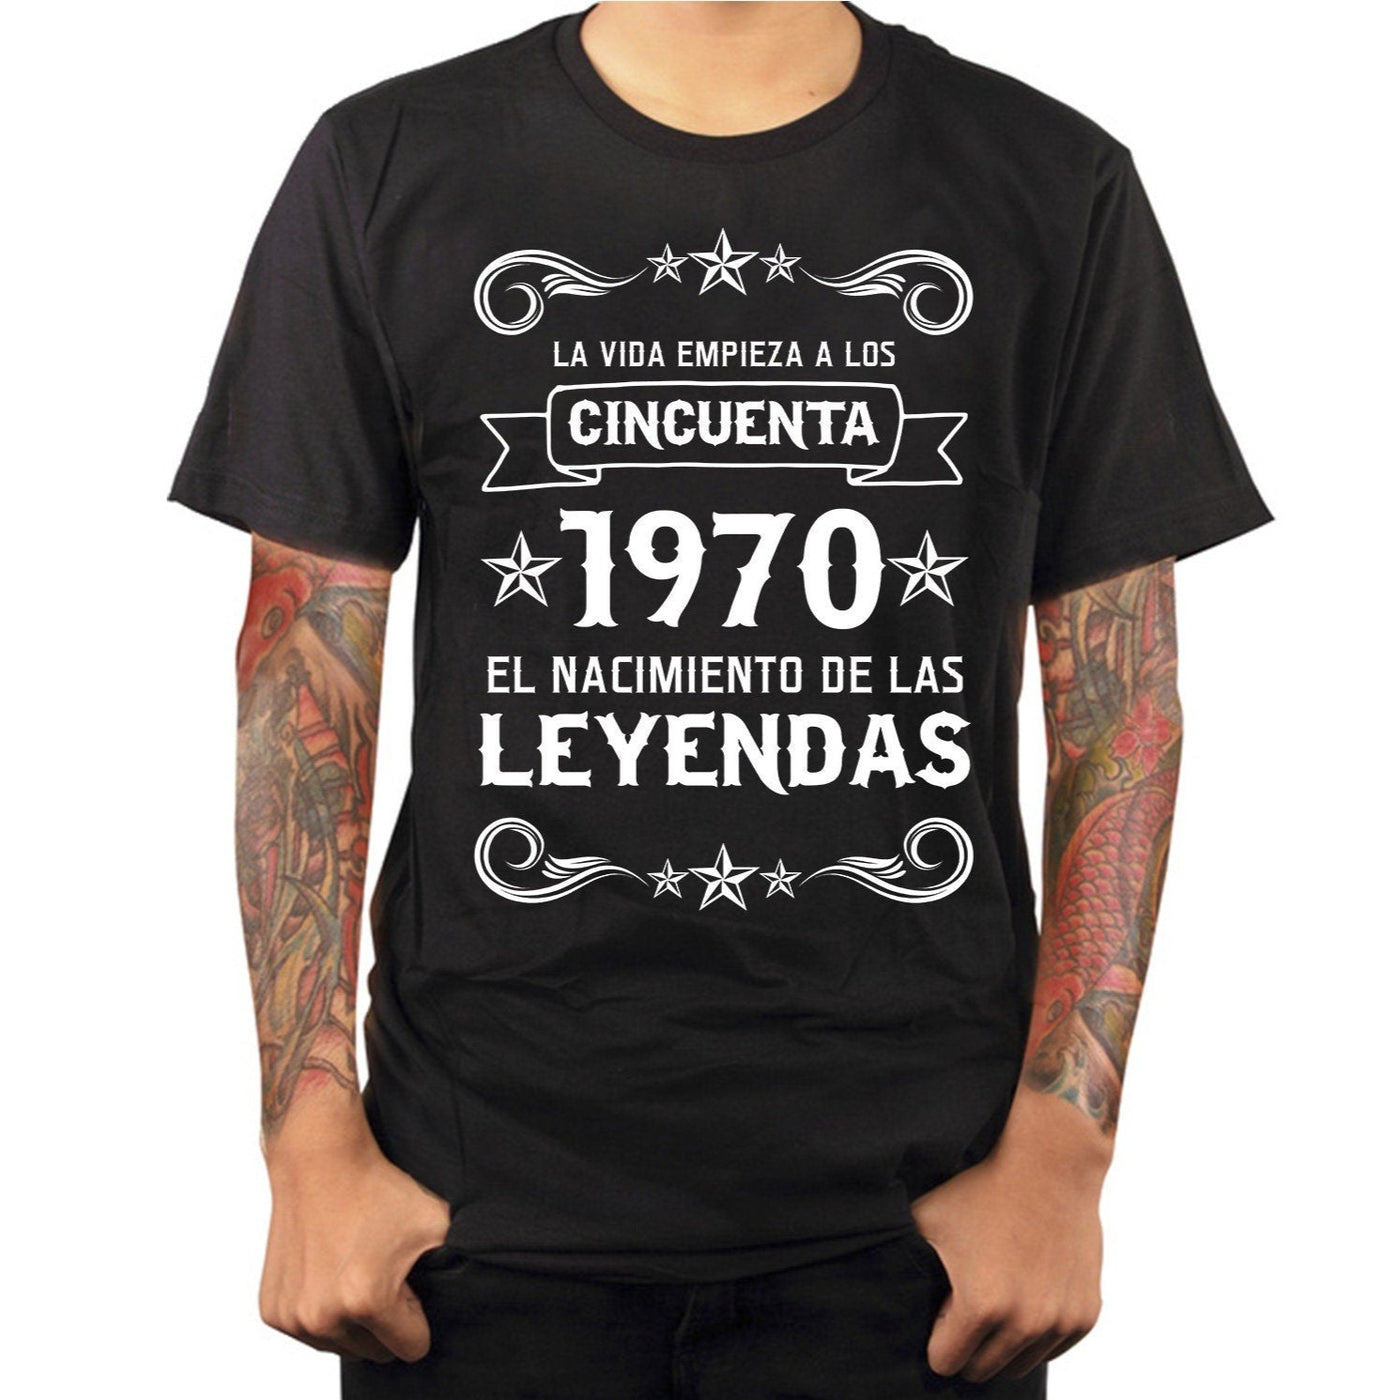 Camiseta para los que cumplen 50 años